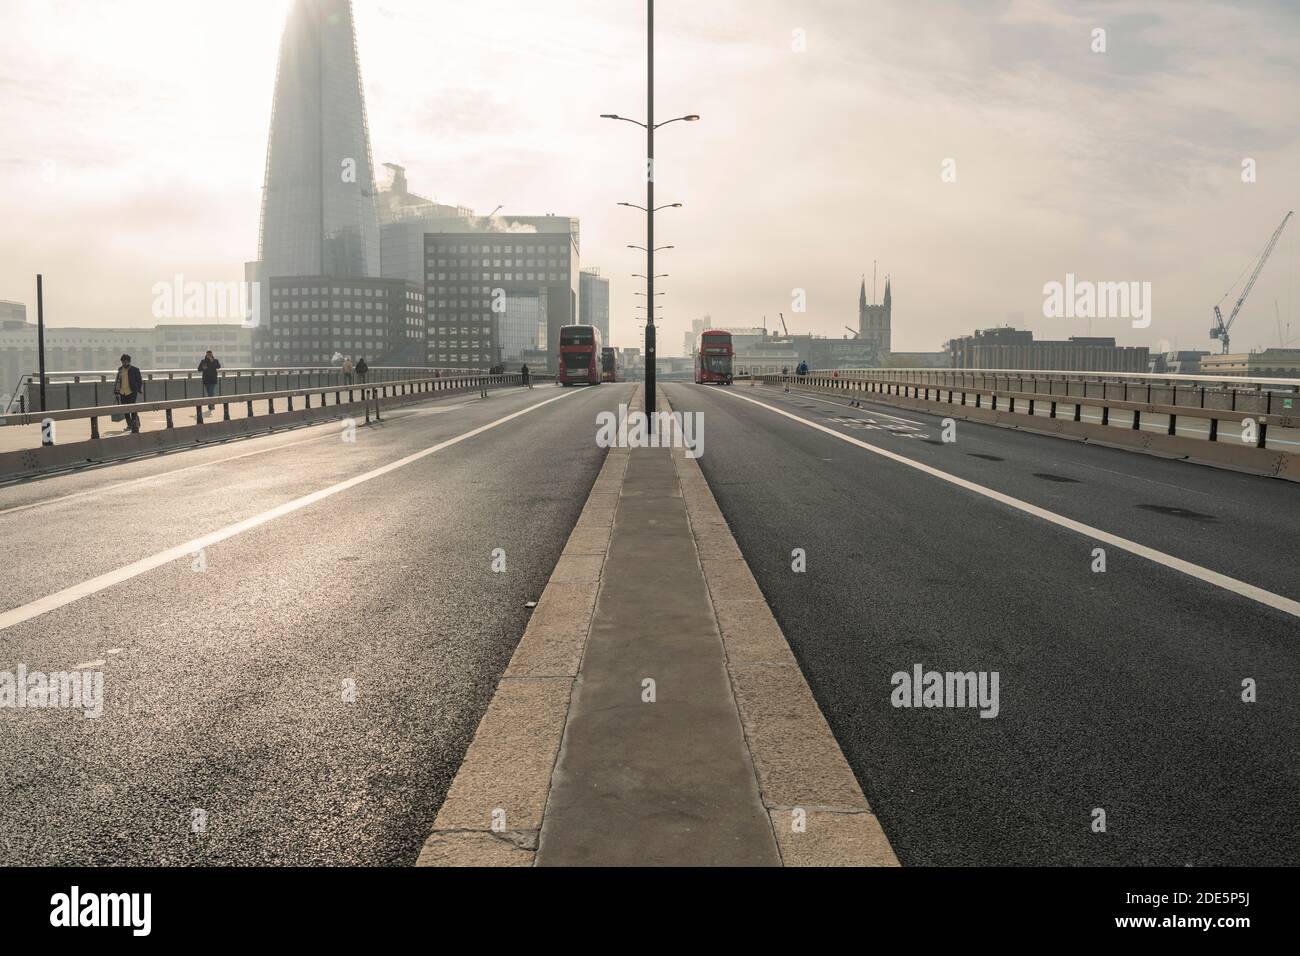 Des routes et des rues calmes, vides et désertes à Londres dans le cadre du confinement pandémique du coronavirus Covid-19 au Shard à London Bridge, sans circulation pendant les heures de pointe Banque D'Images